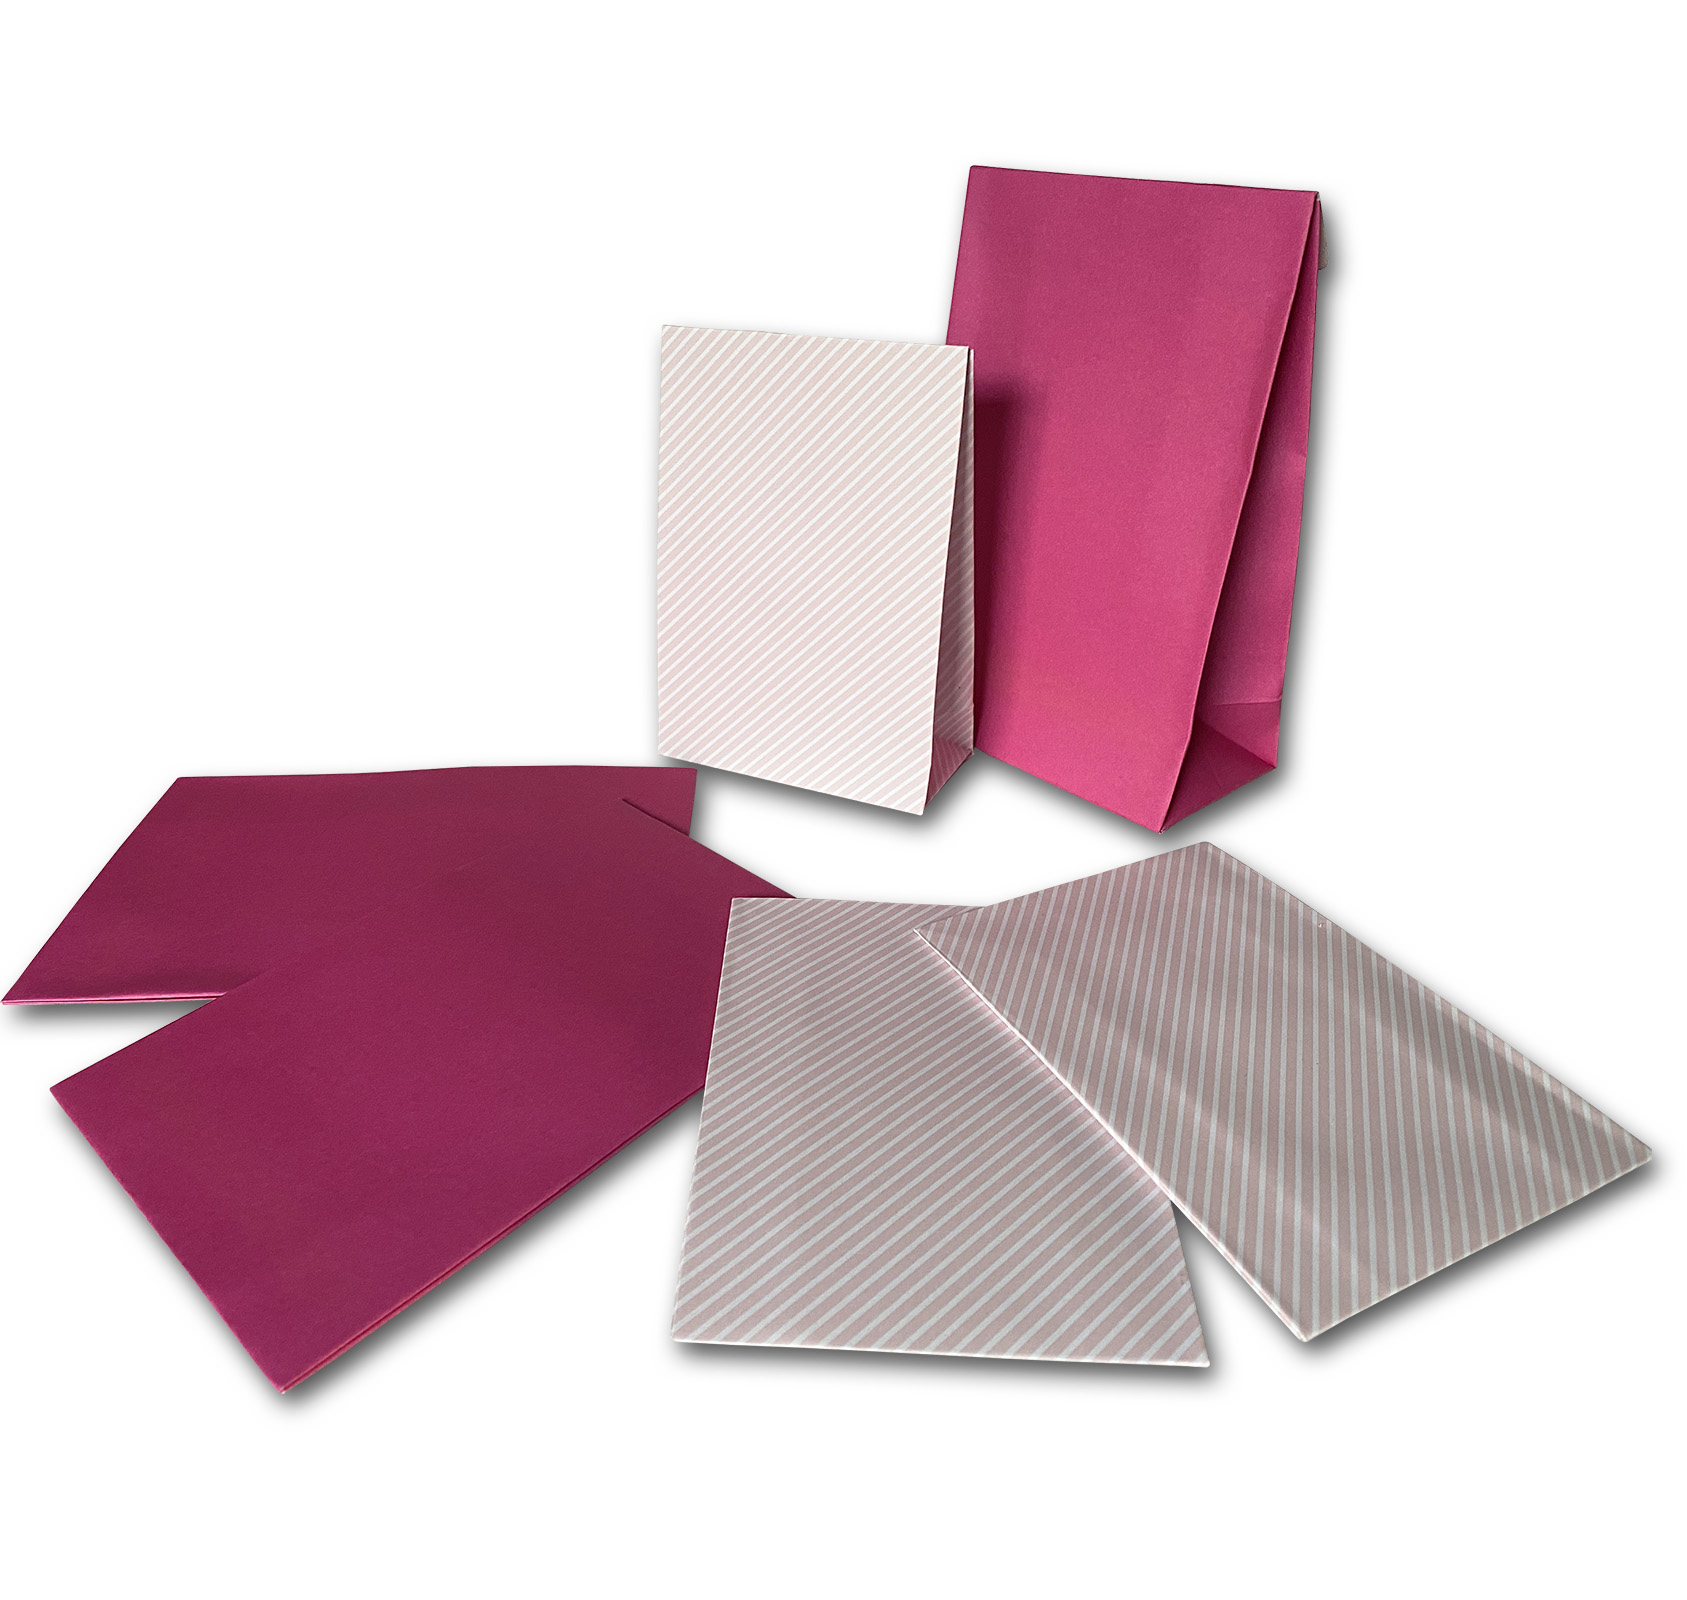 PODARI DIY Adventskalender selber Basteln 24 Papiertüten Pink in 2 Größen | 12,5 x 19 cm & 10,5 x 15 cm | Weihnachten